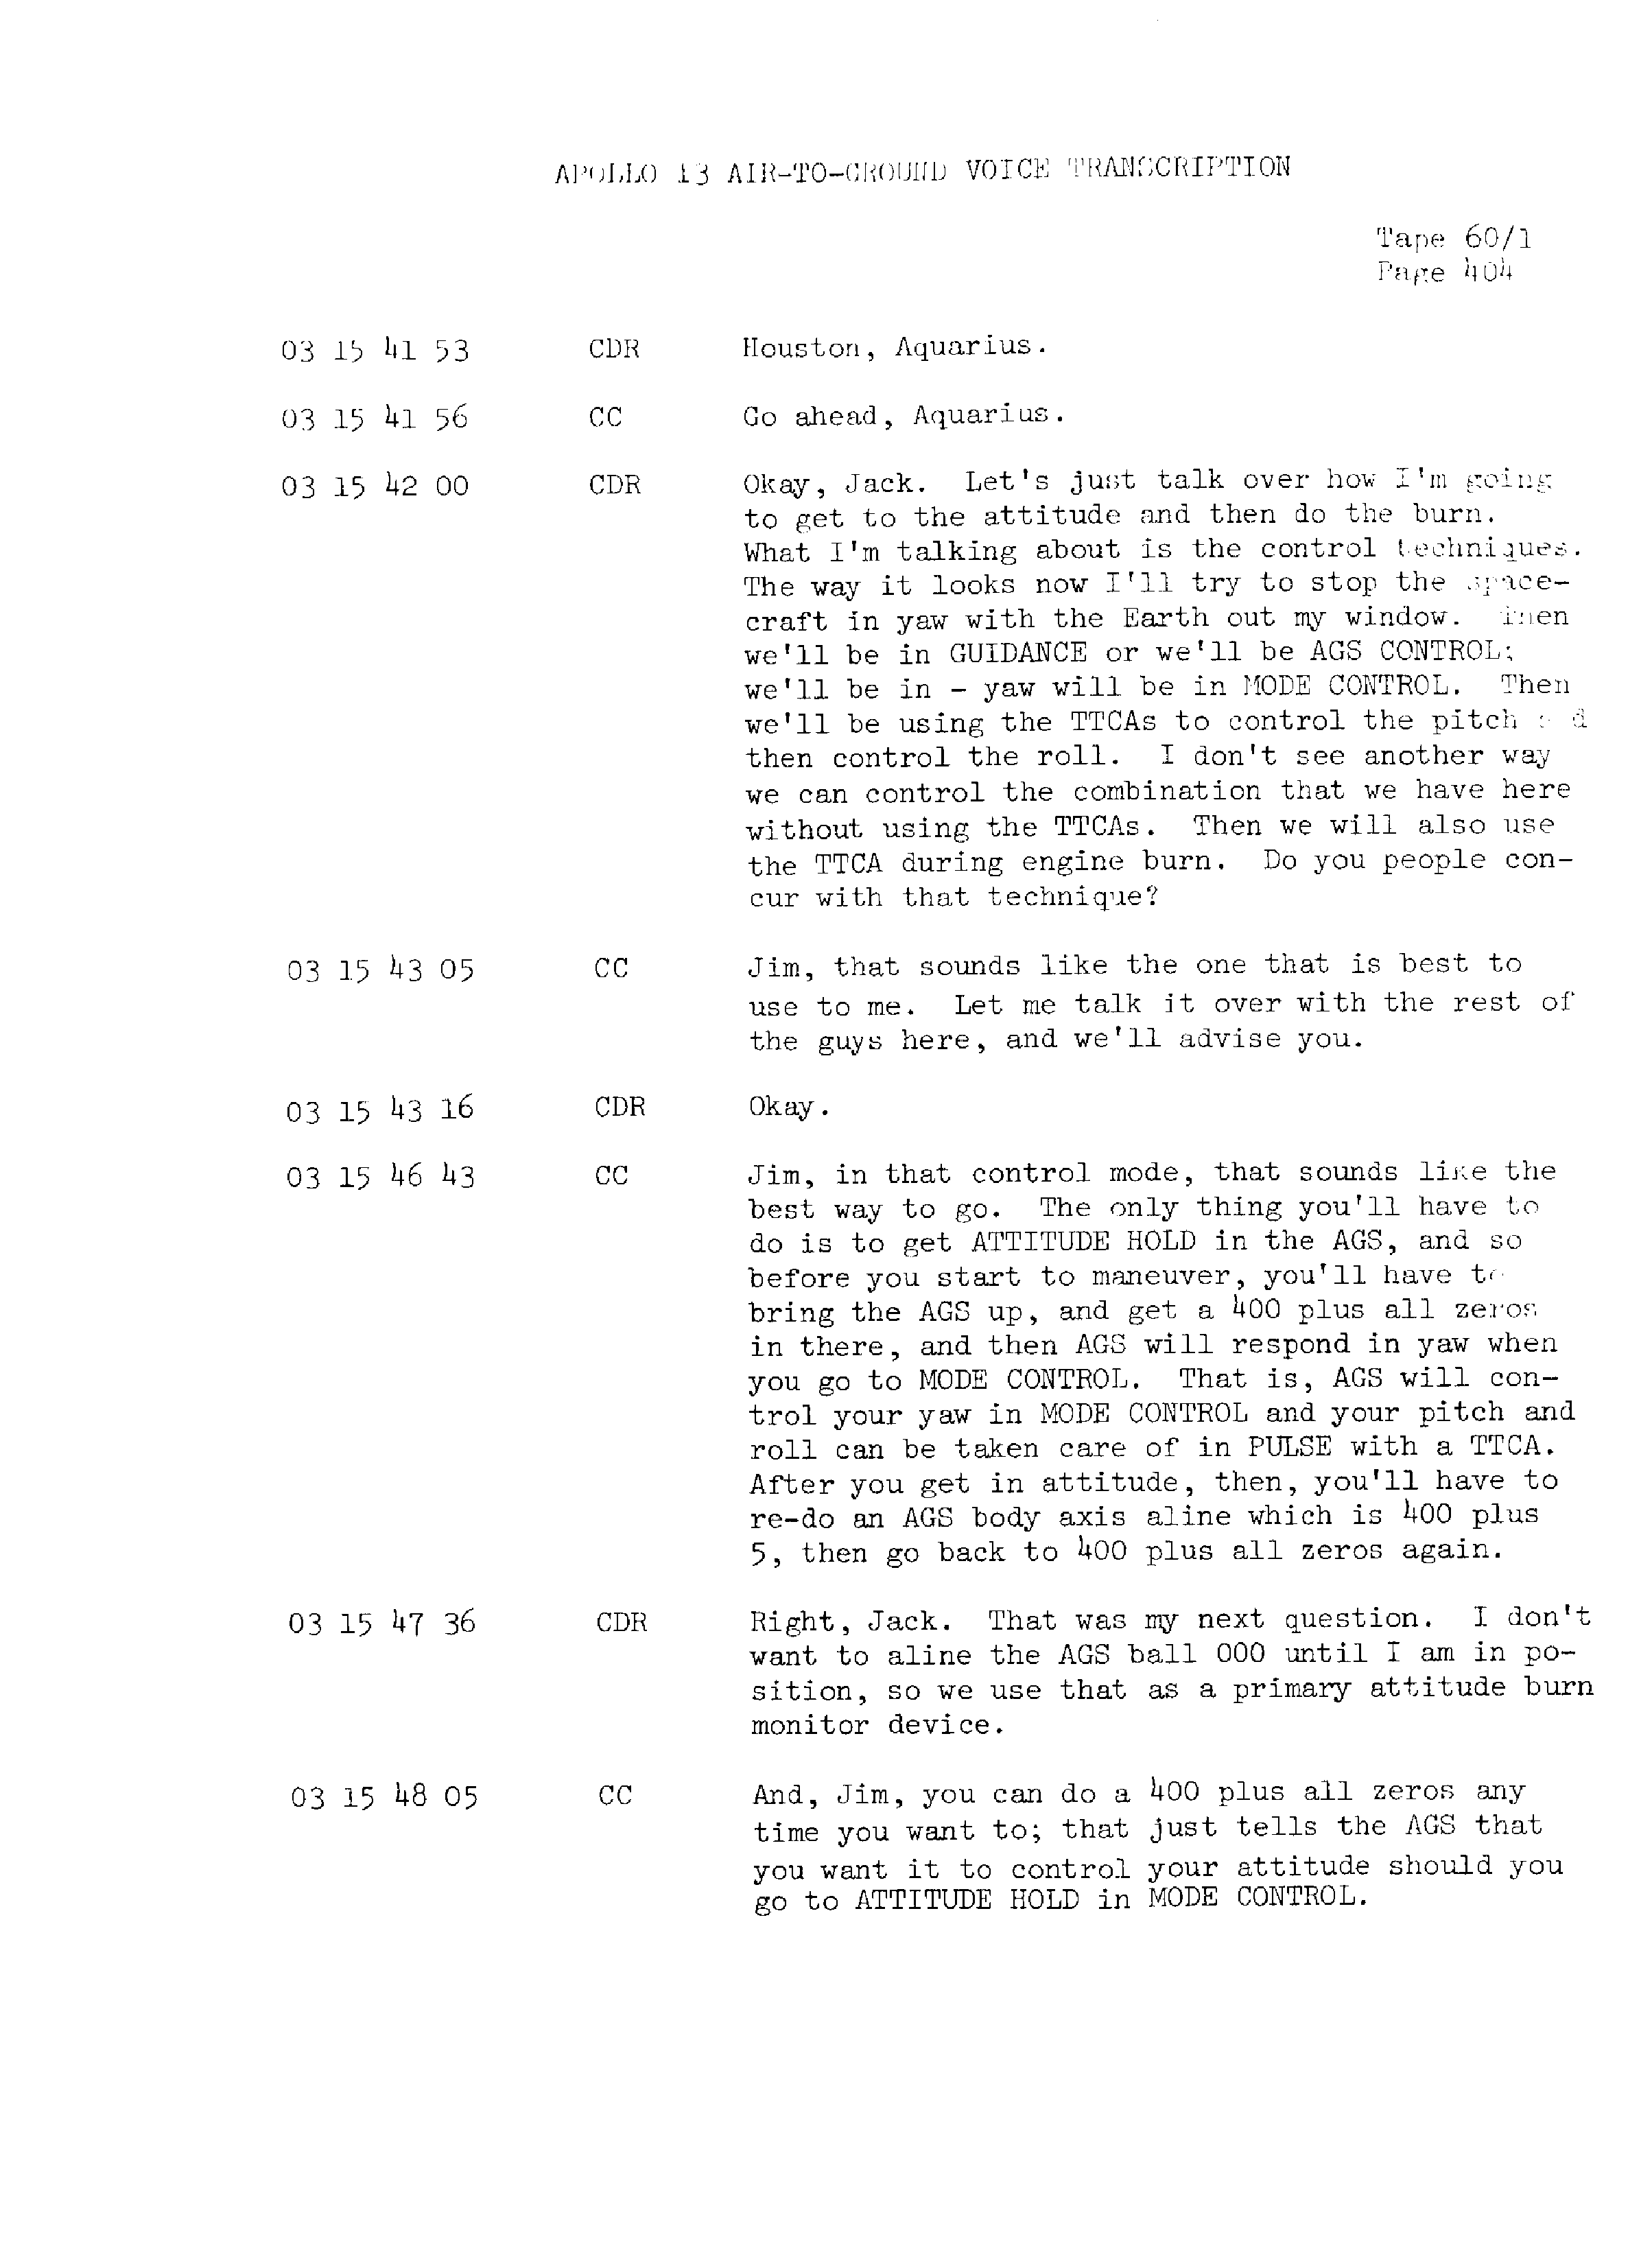 Page 411 of Apollo 13’s original transcript